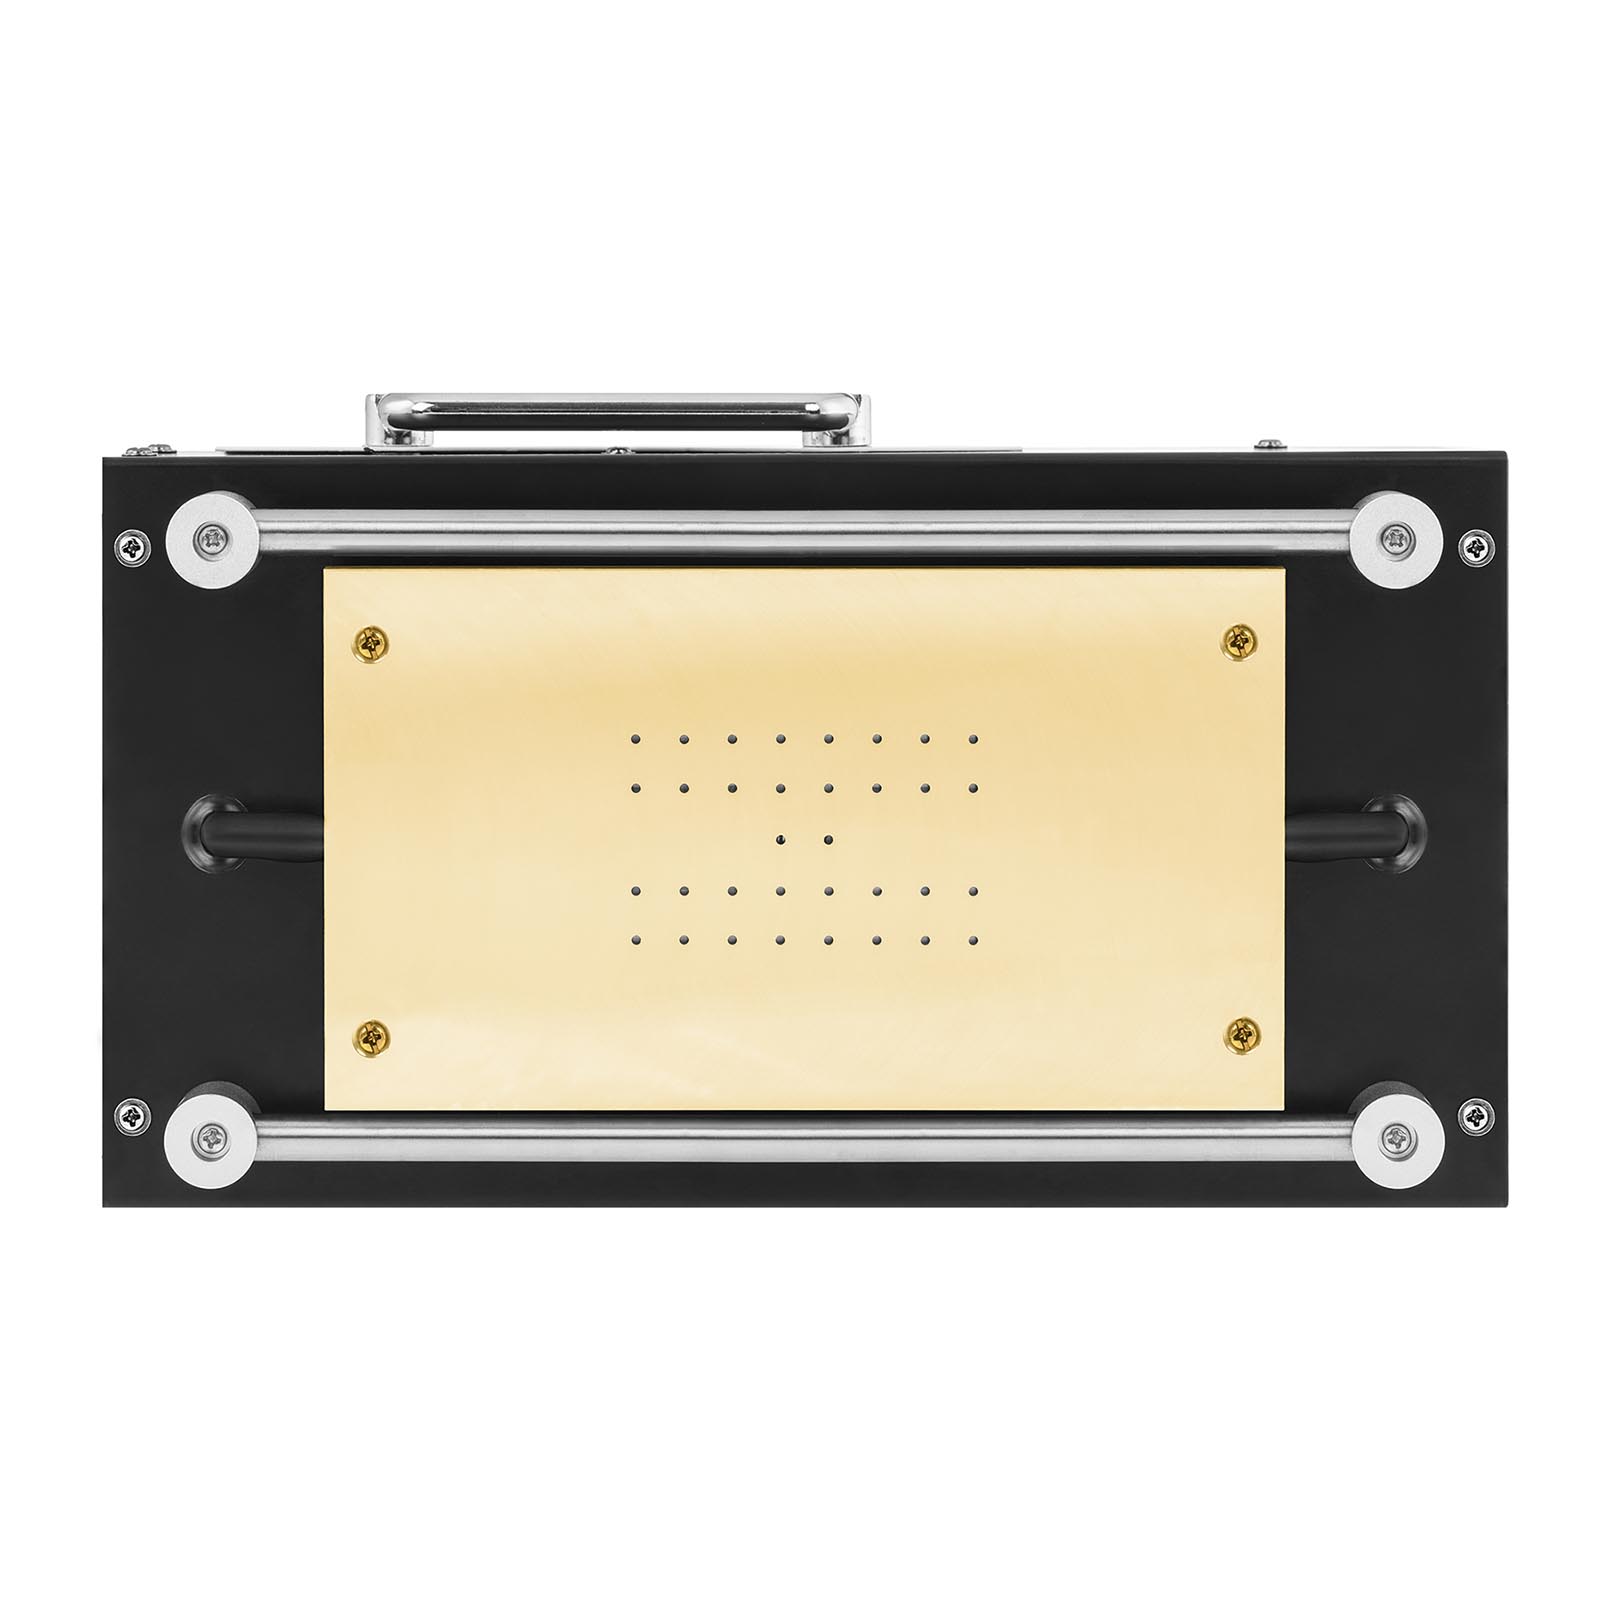 LCD-separator - Upp till 8" - 370W - UV-lampa - USB-port - Digital display